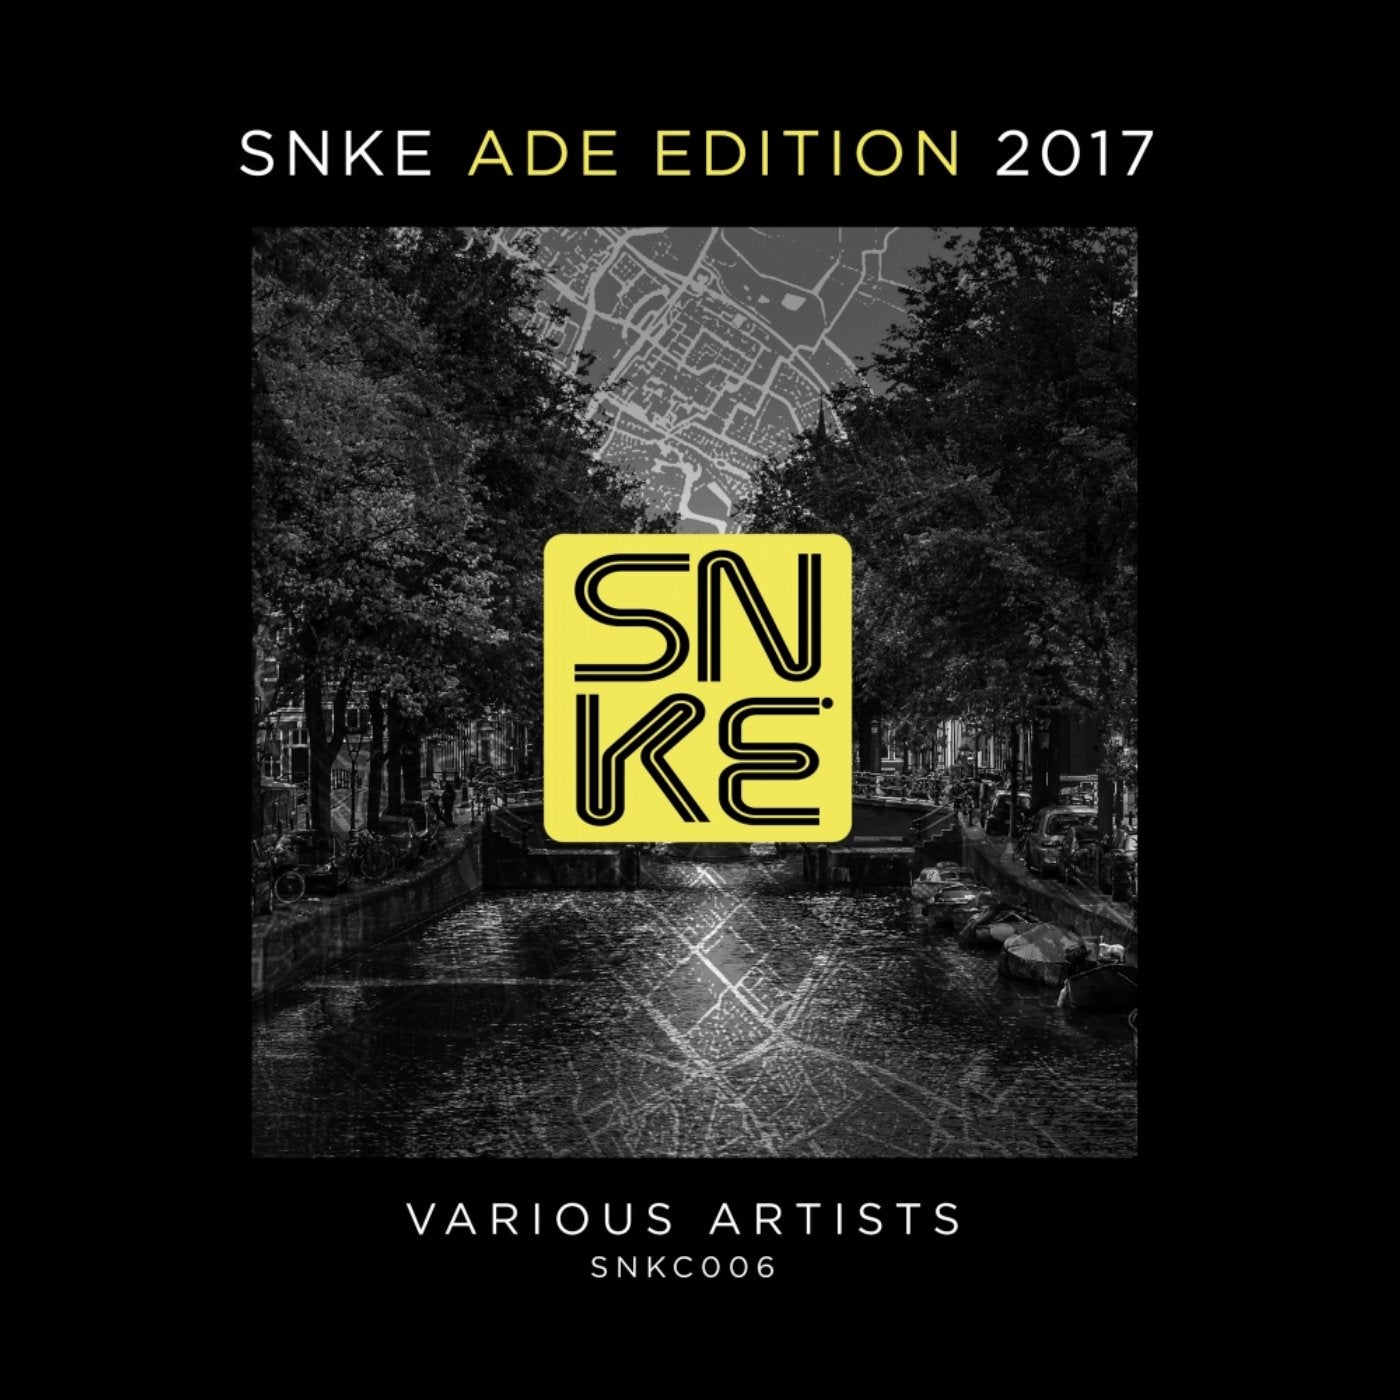 SNKE ADE Edition 2017